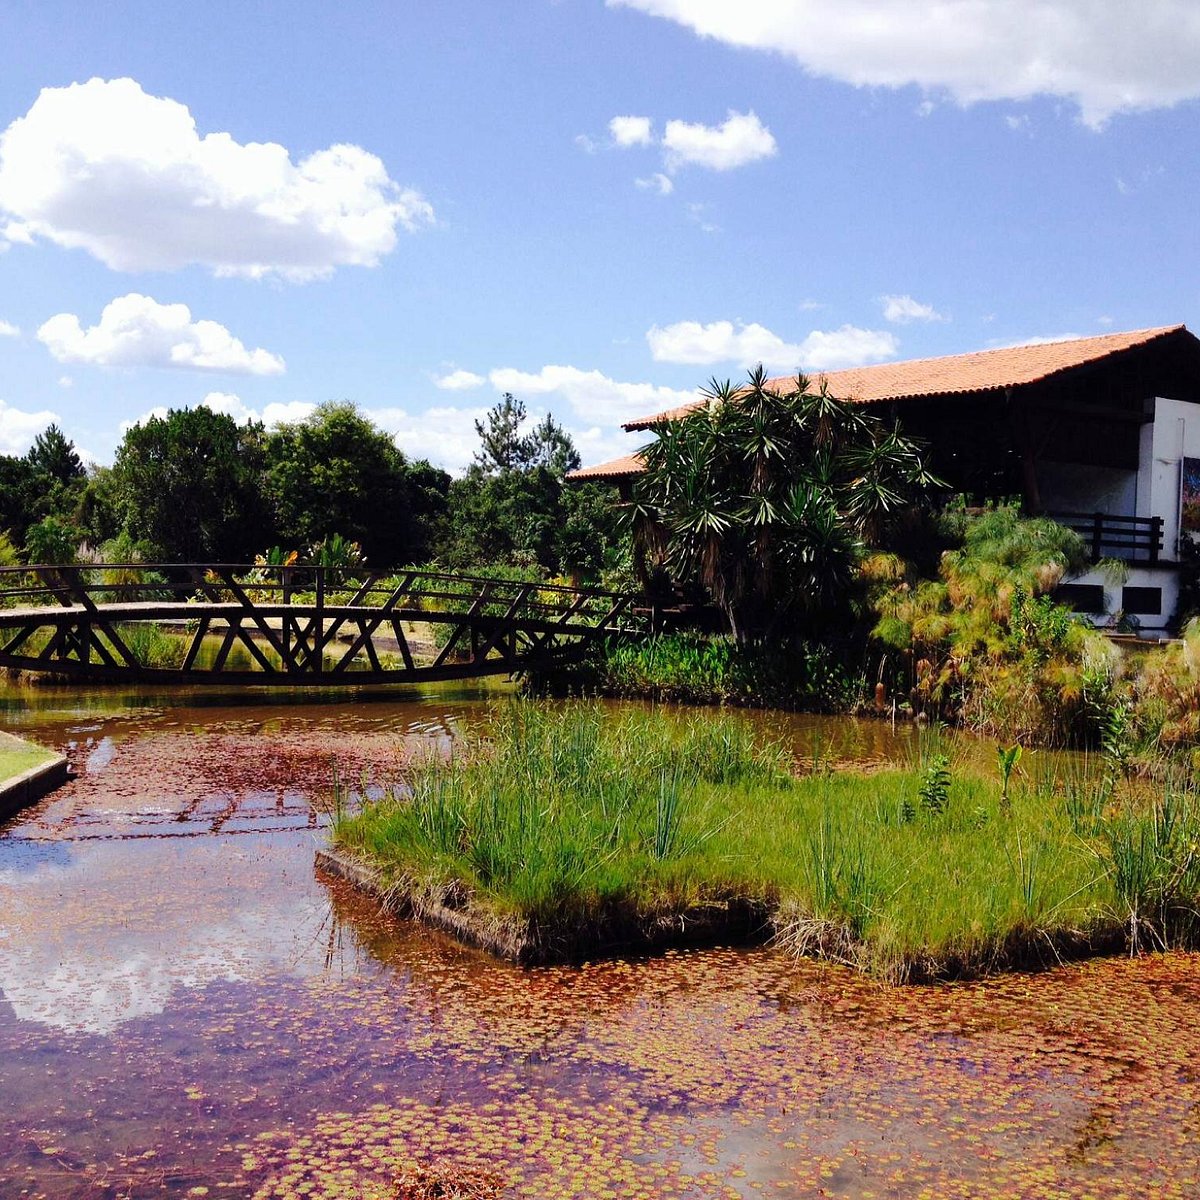 Parques em Brasília: estrutura e belezas do Cerrado perto de casa